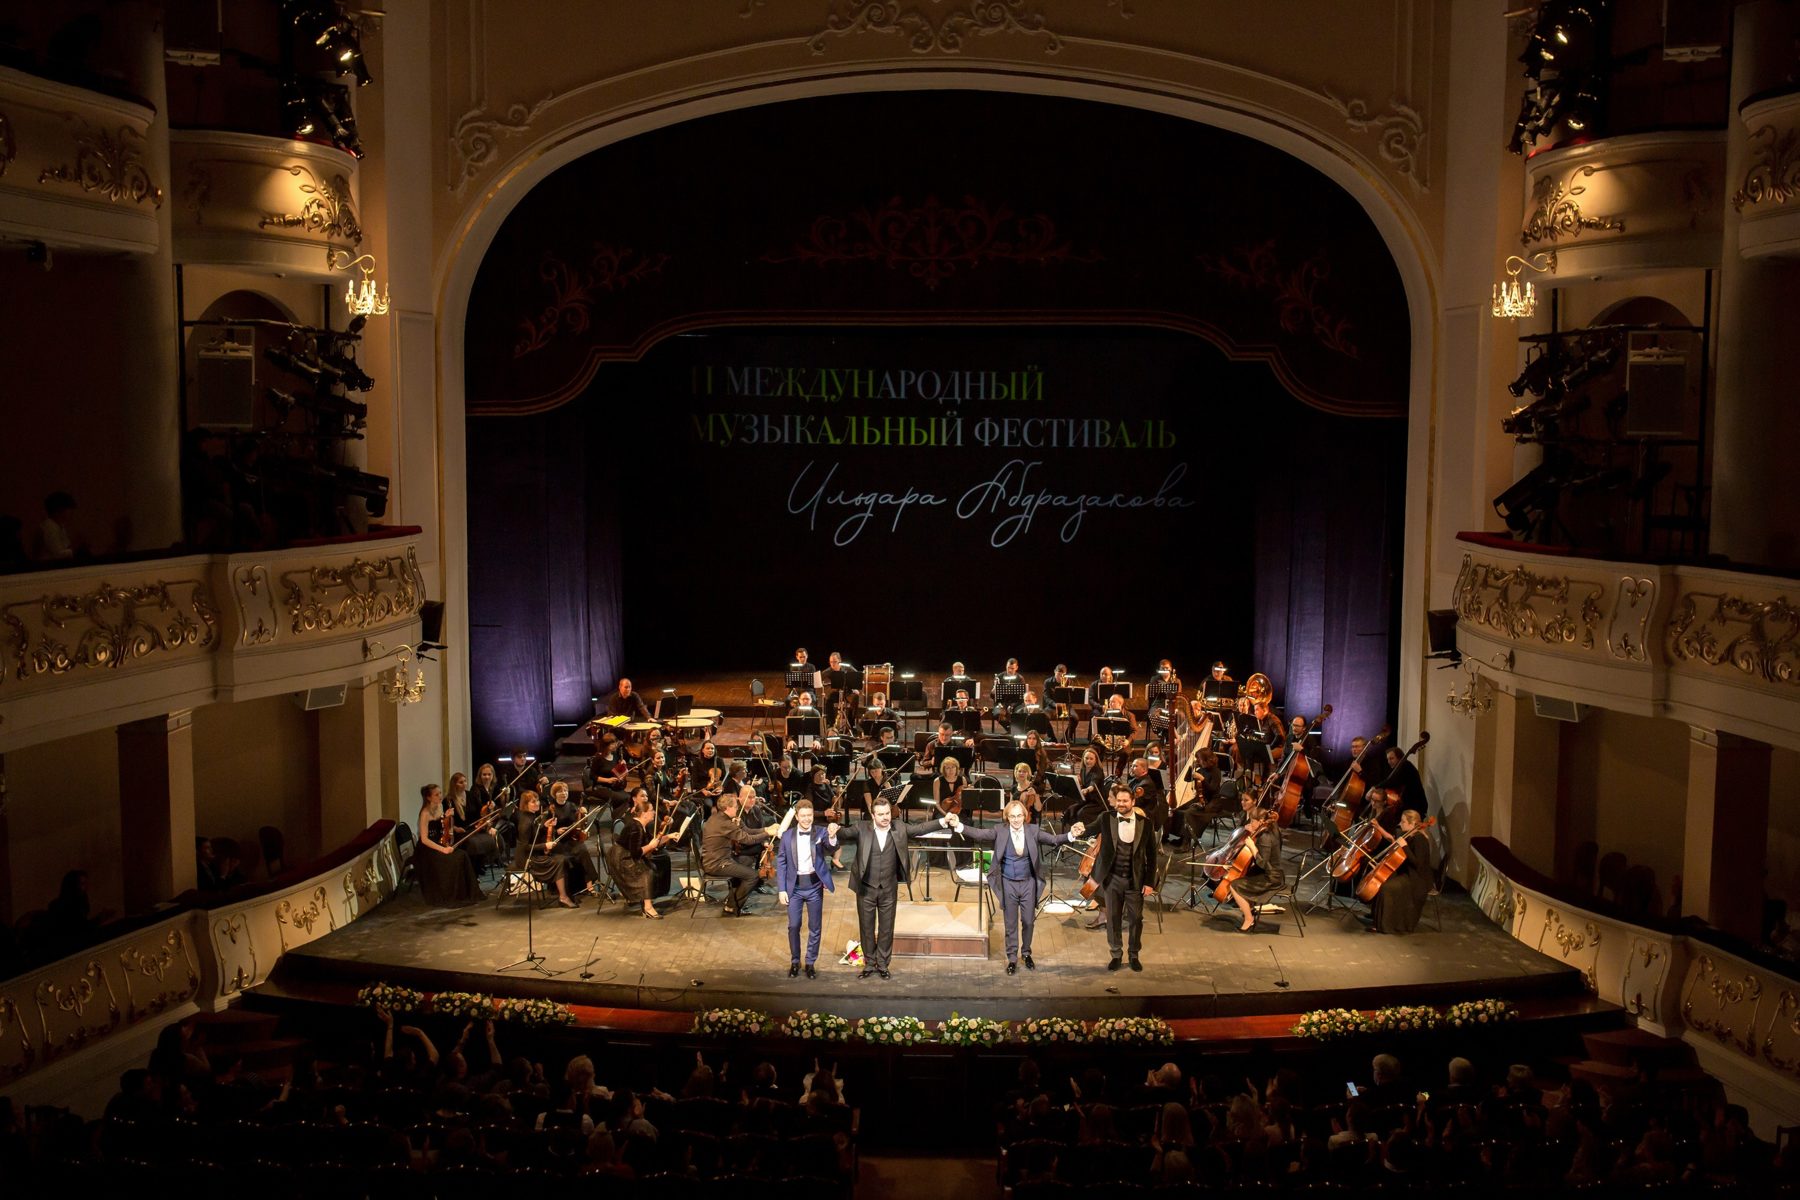 Концерт «Верди-гала» – события на сайте «Московские Сезоны»